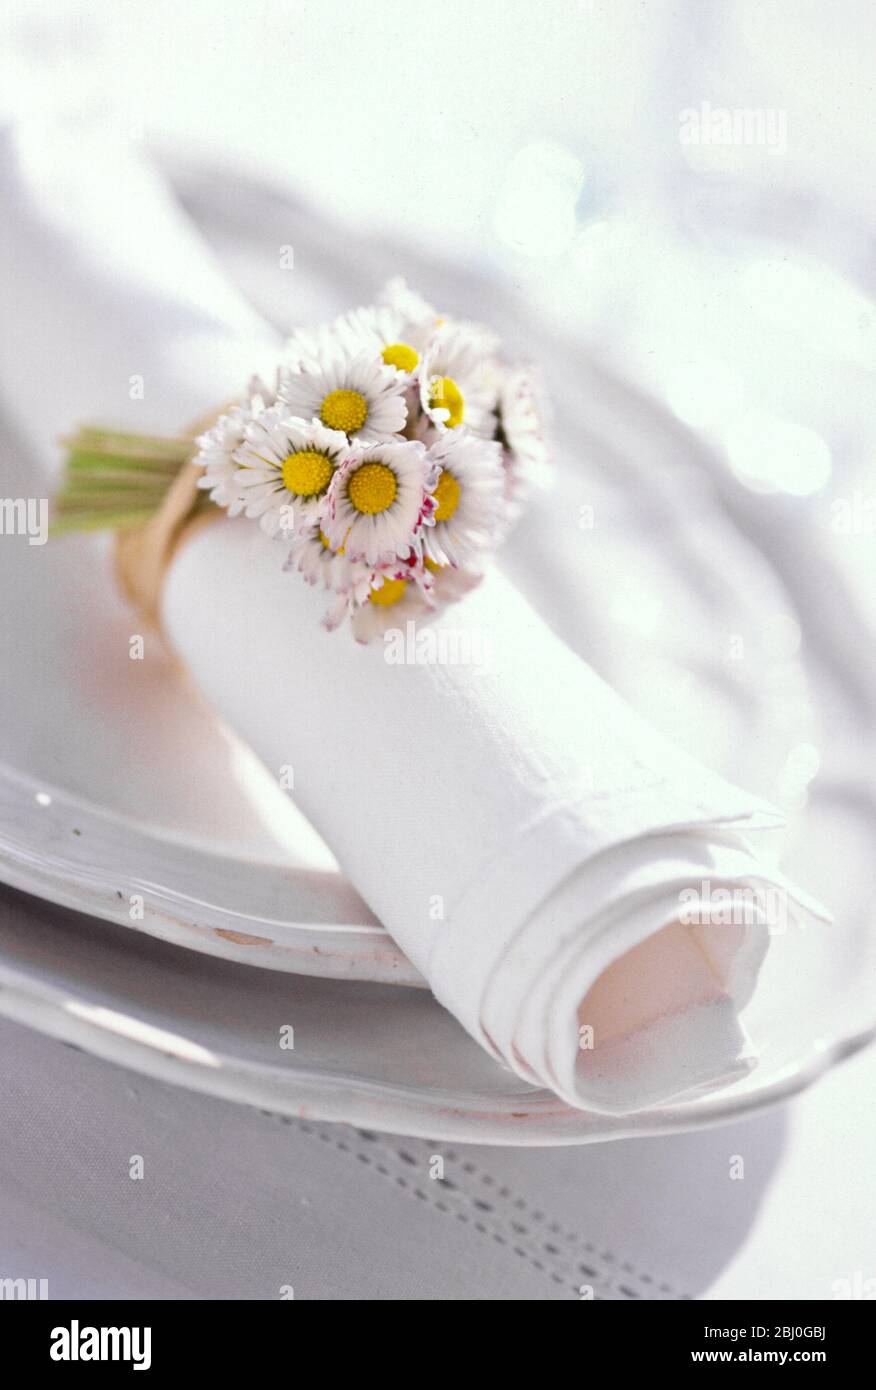 Weiße Serviette, gerollt, mit Gänseblümchen gebunden, auf weißen Tellern. - Stockfoto